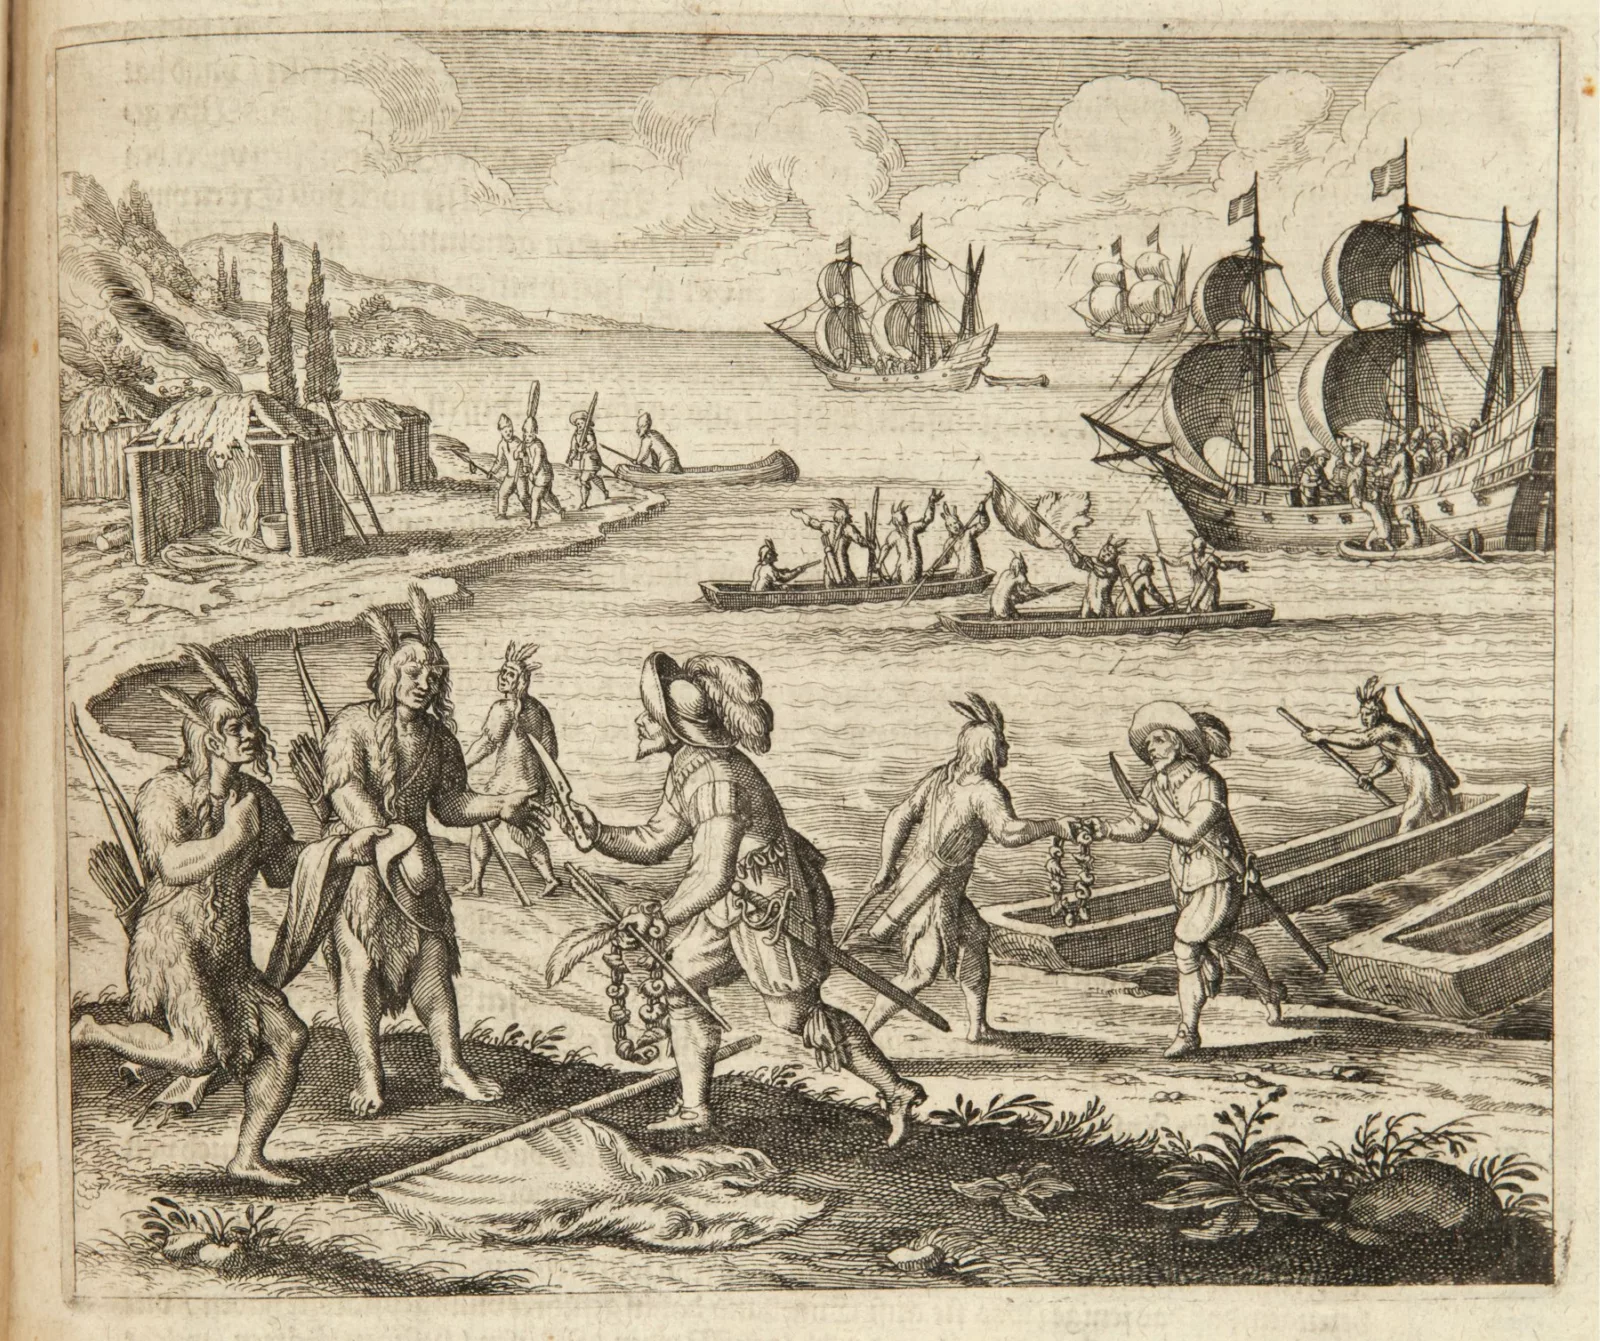 Bartholomew Gosnold trading with Wampanoag Indians at Martha's Vineyard, Massachusetts, 1597